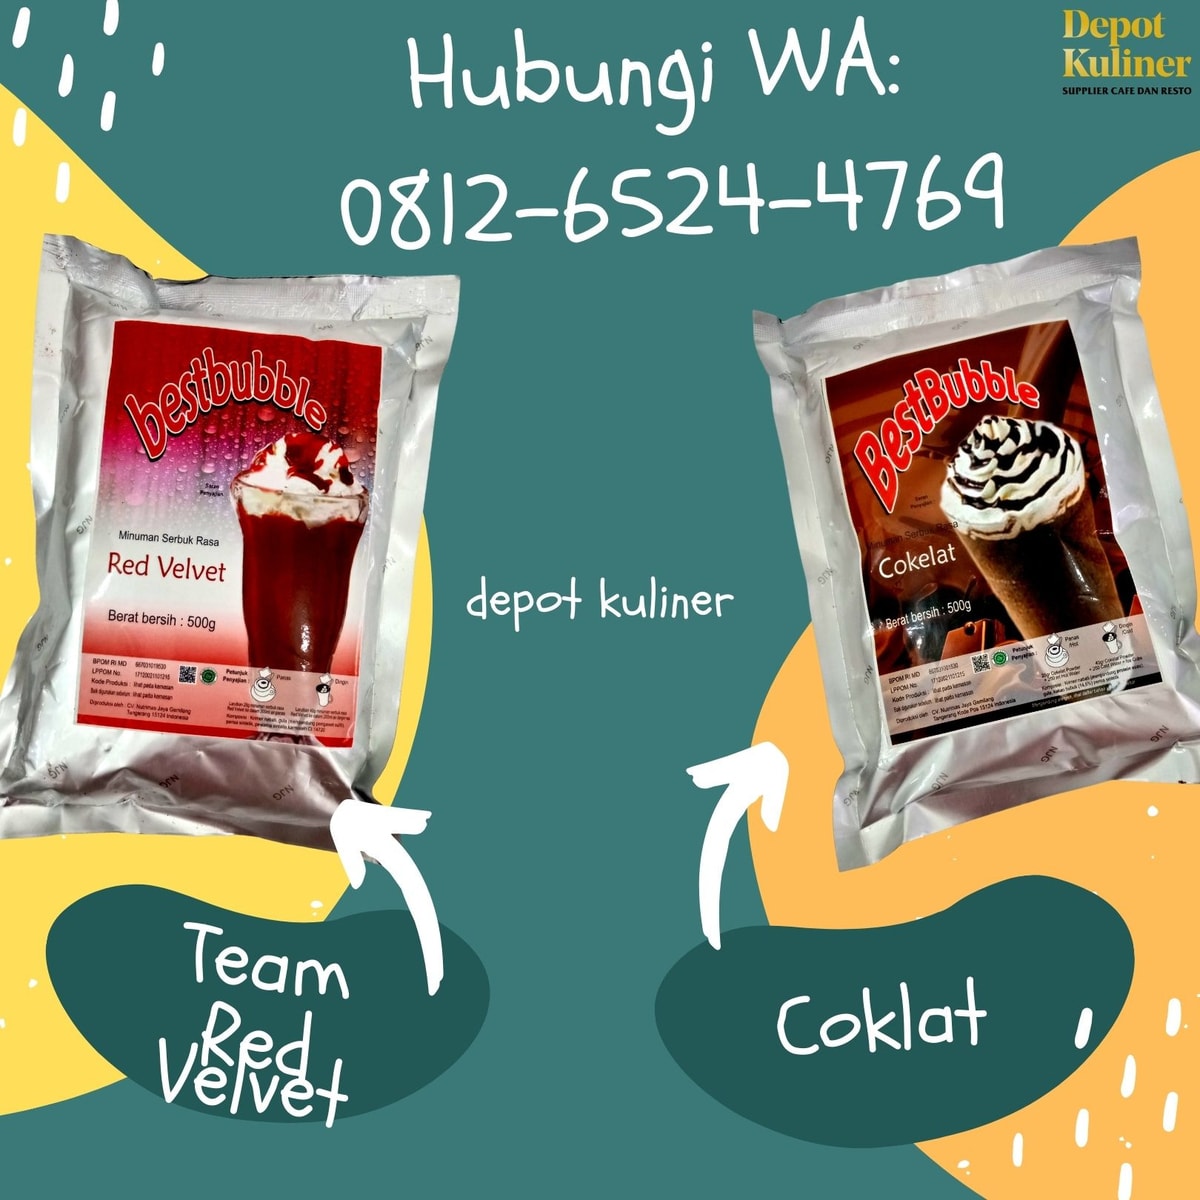 HARGA TERJANGKAU, Call 0812-6524-4769, Distributor Bubuk Minuman Medan